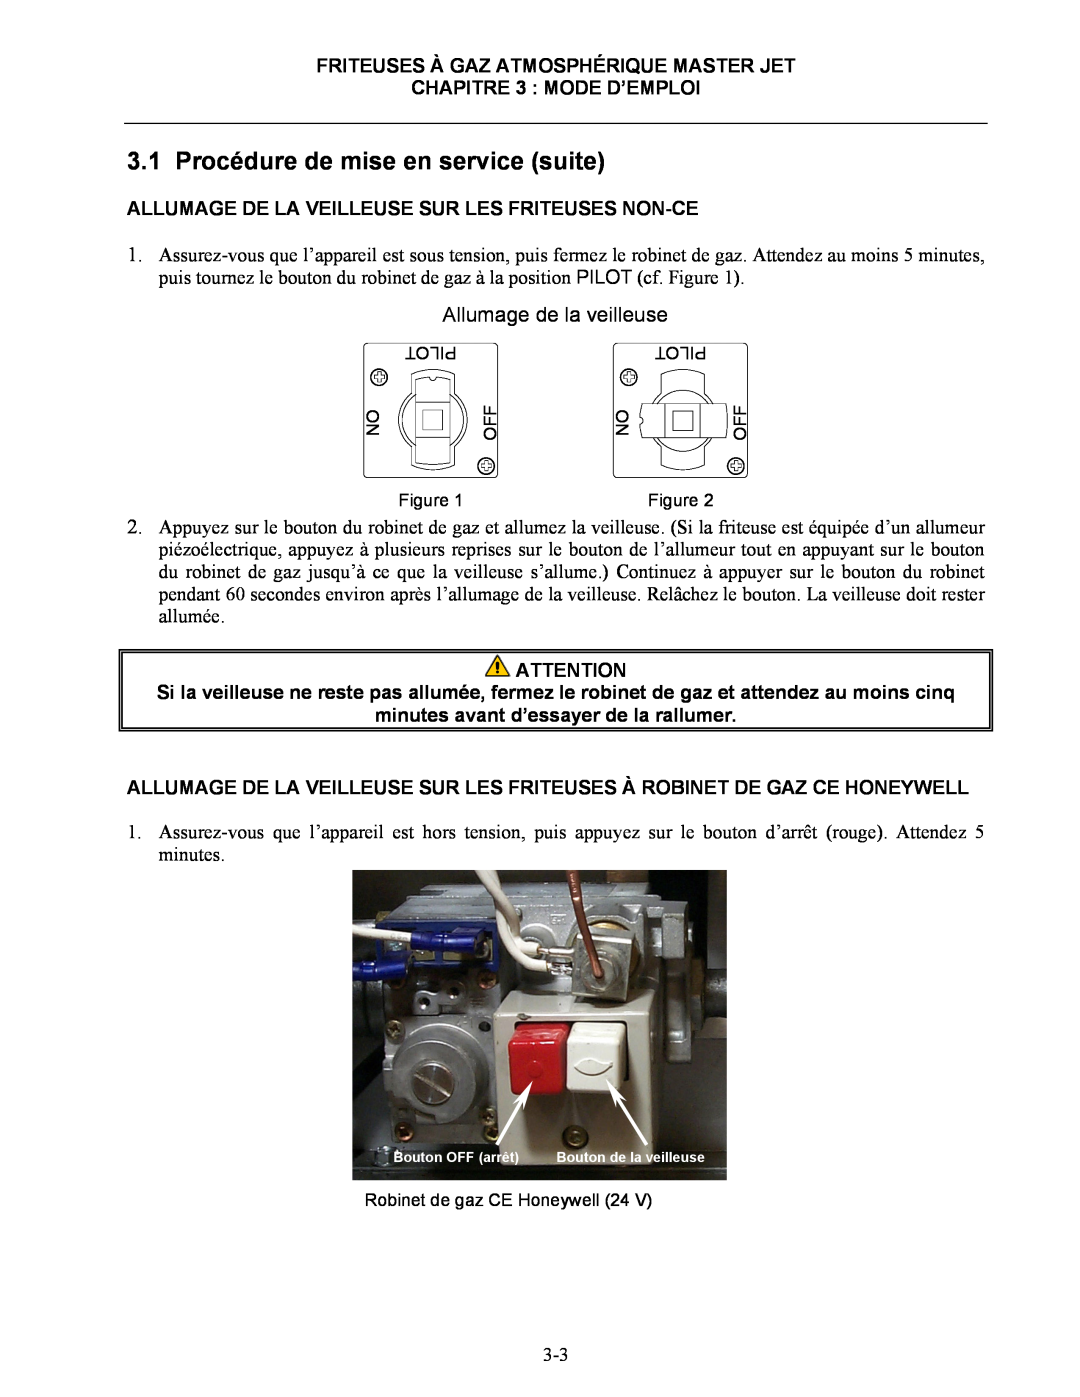 Frymaster CF manual Allumage De La Veilleuse Sur Les Friteuses Non-Ce, minutes avant d’essayer de la rallumer 